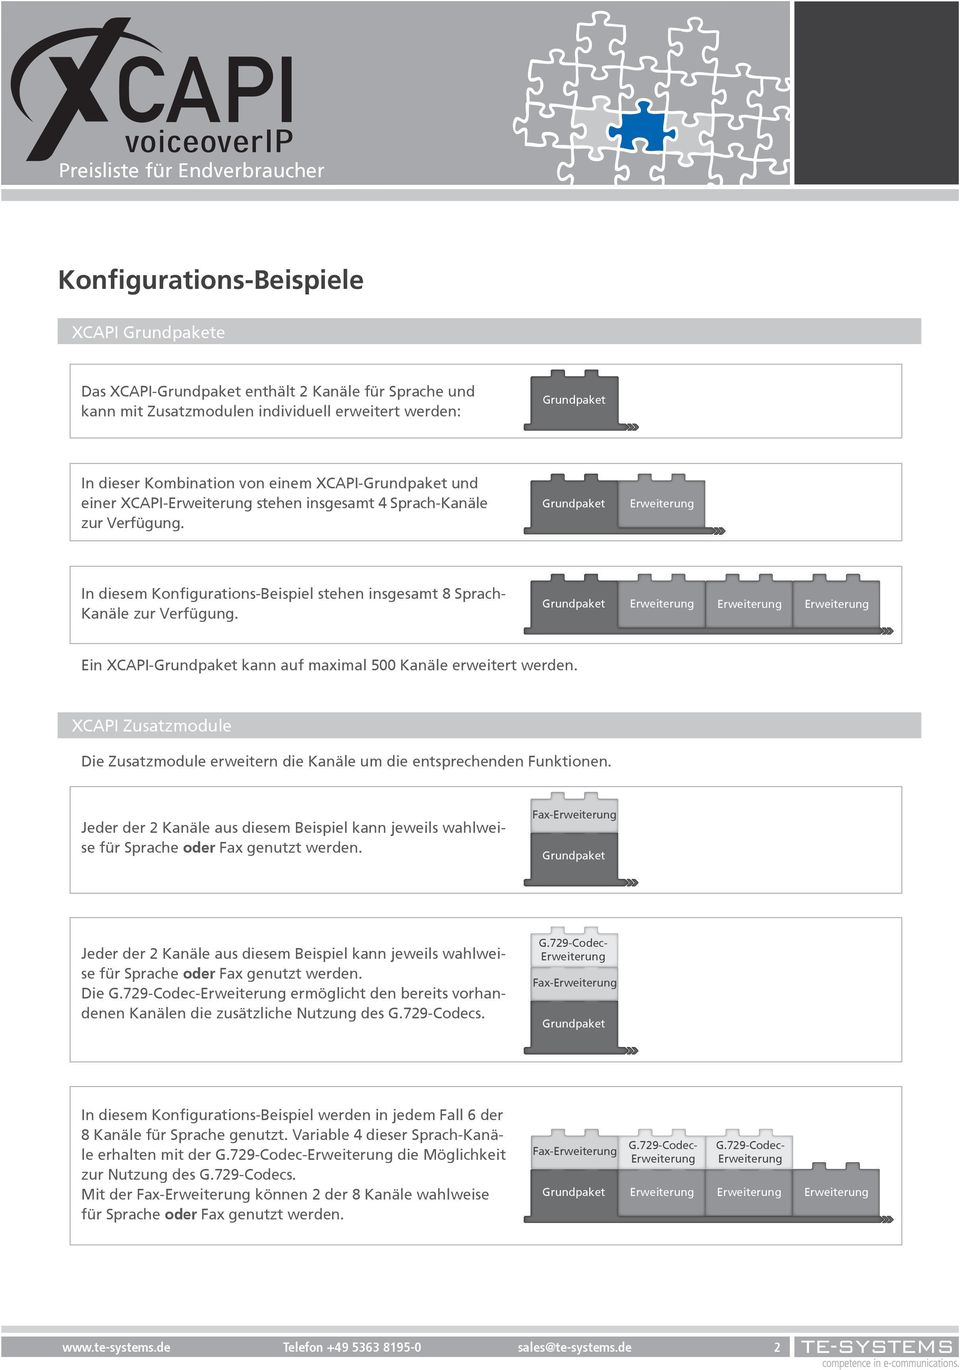 XCAPI Zusatzmodule Die Zusatzmodule erweitern die Kanäle um die entsprechenden Funktionen. Jeder der 2 Kanäle aus diesem Beispiel kann jeweils wahlweise für Sprache oder Fax genutzt werden.